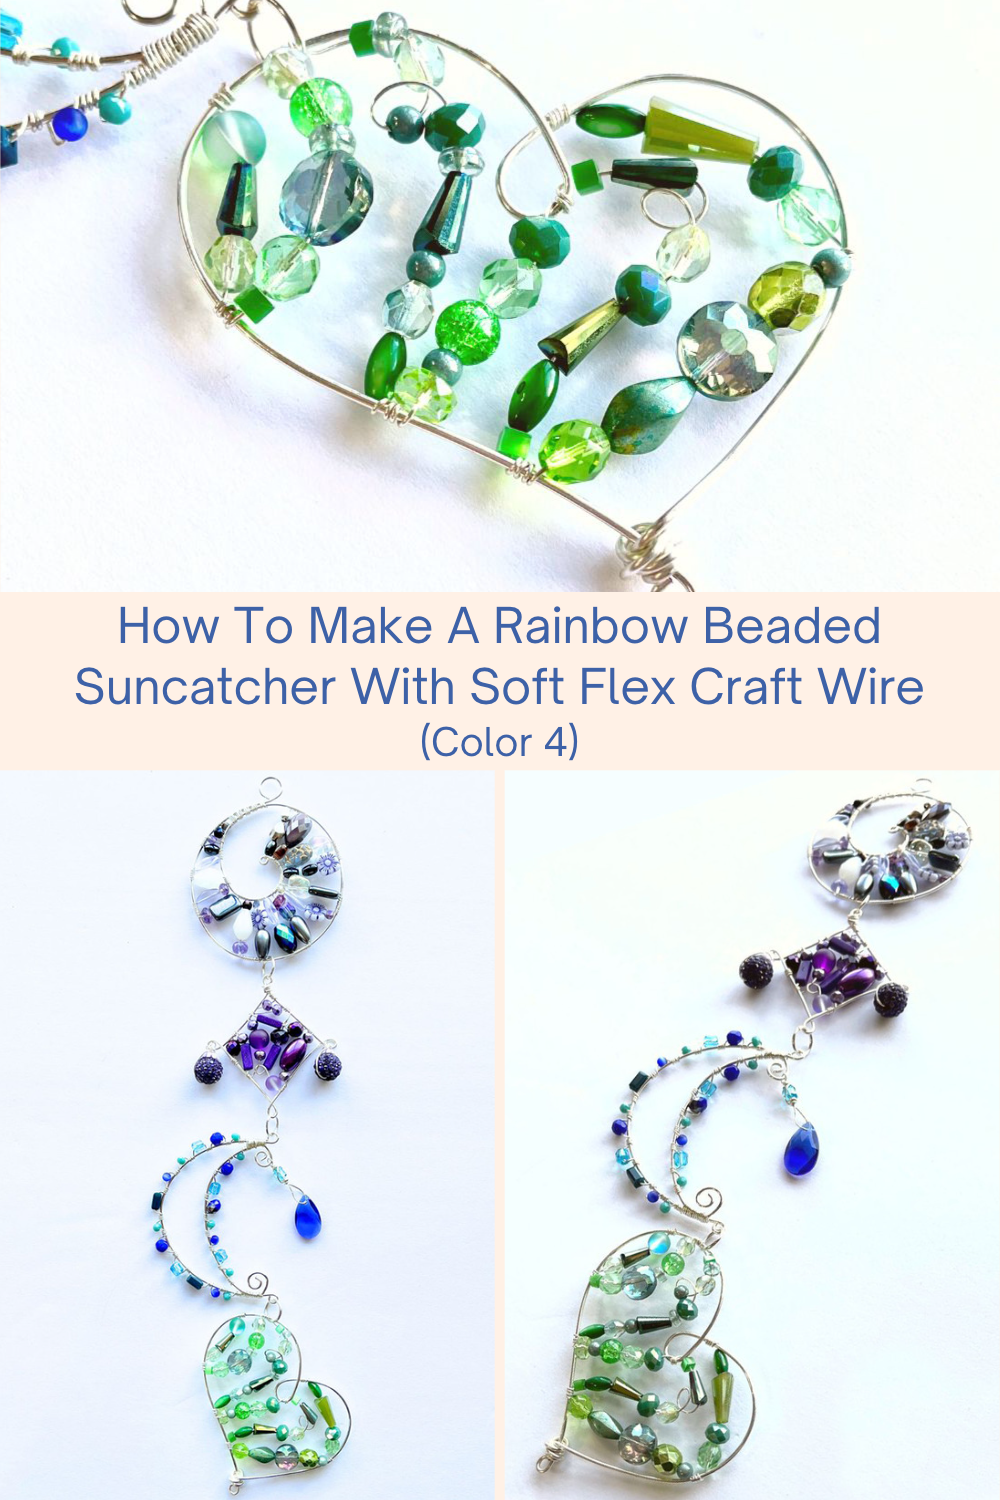 How To Make A Rainbow Beaded Suncatcher With Soft Flex Craft Wire (Color 4)  - Soft Flex Company